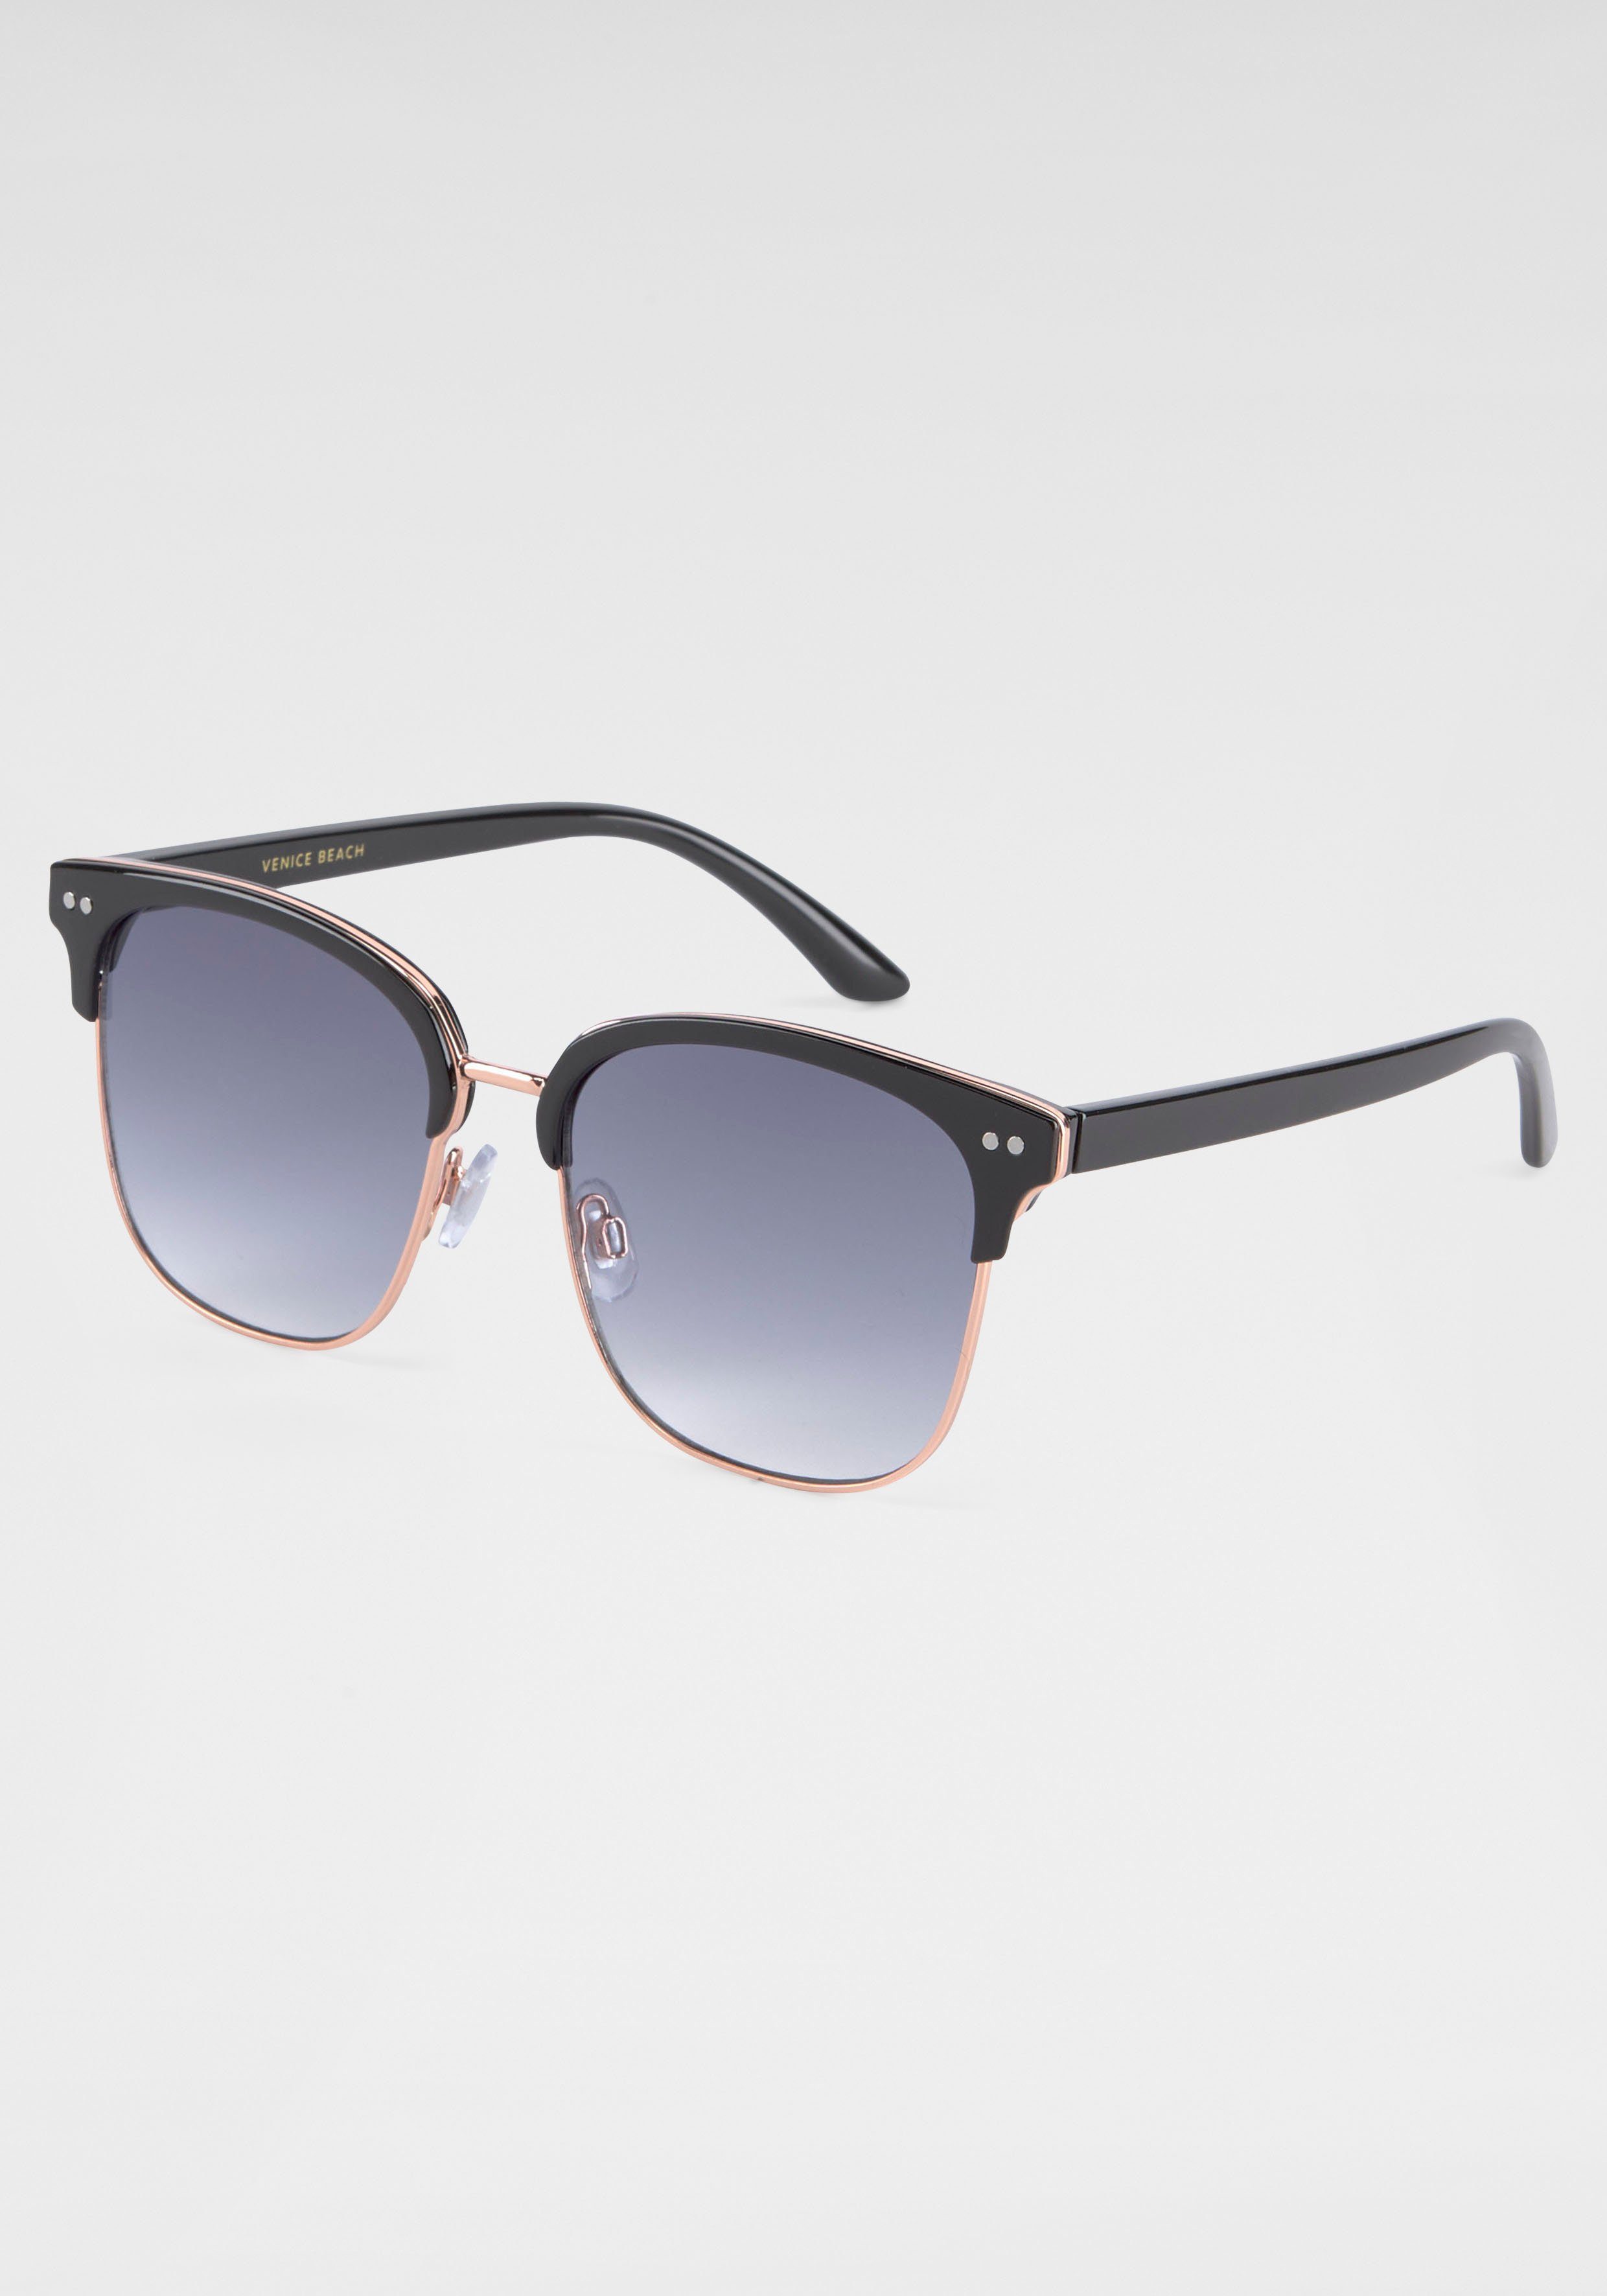 BACK IN BLACK Eyewear Sonnenbrille mit Gläsern schwarz gebogenen